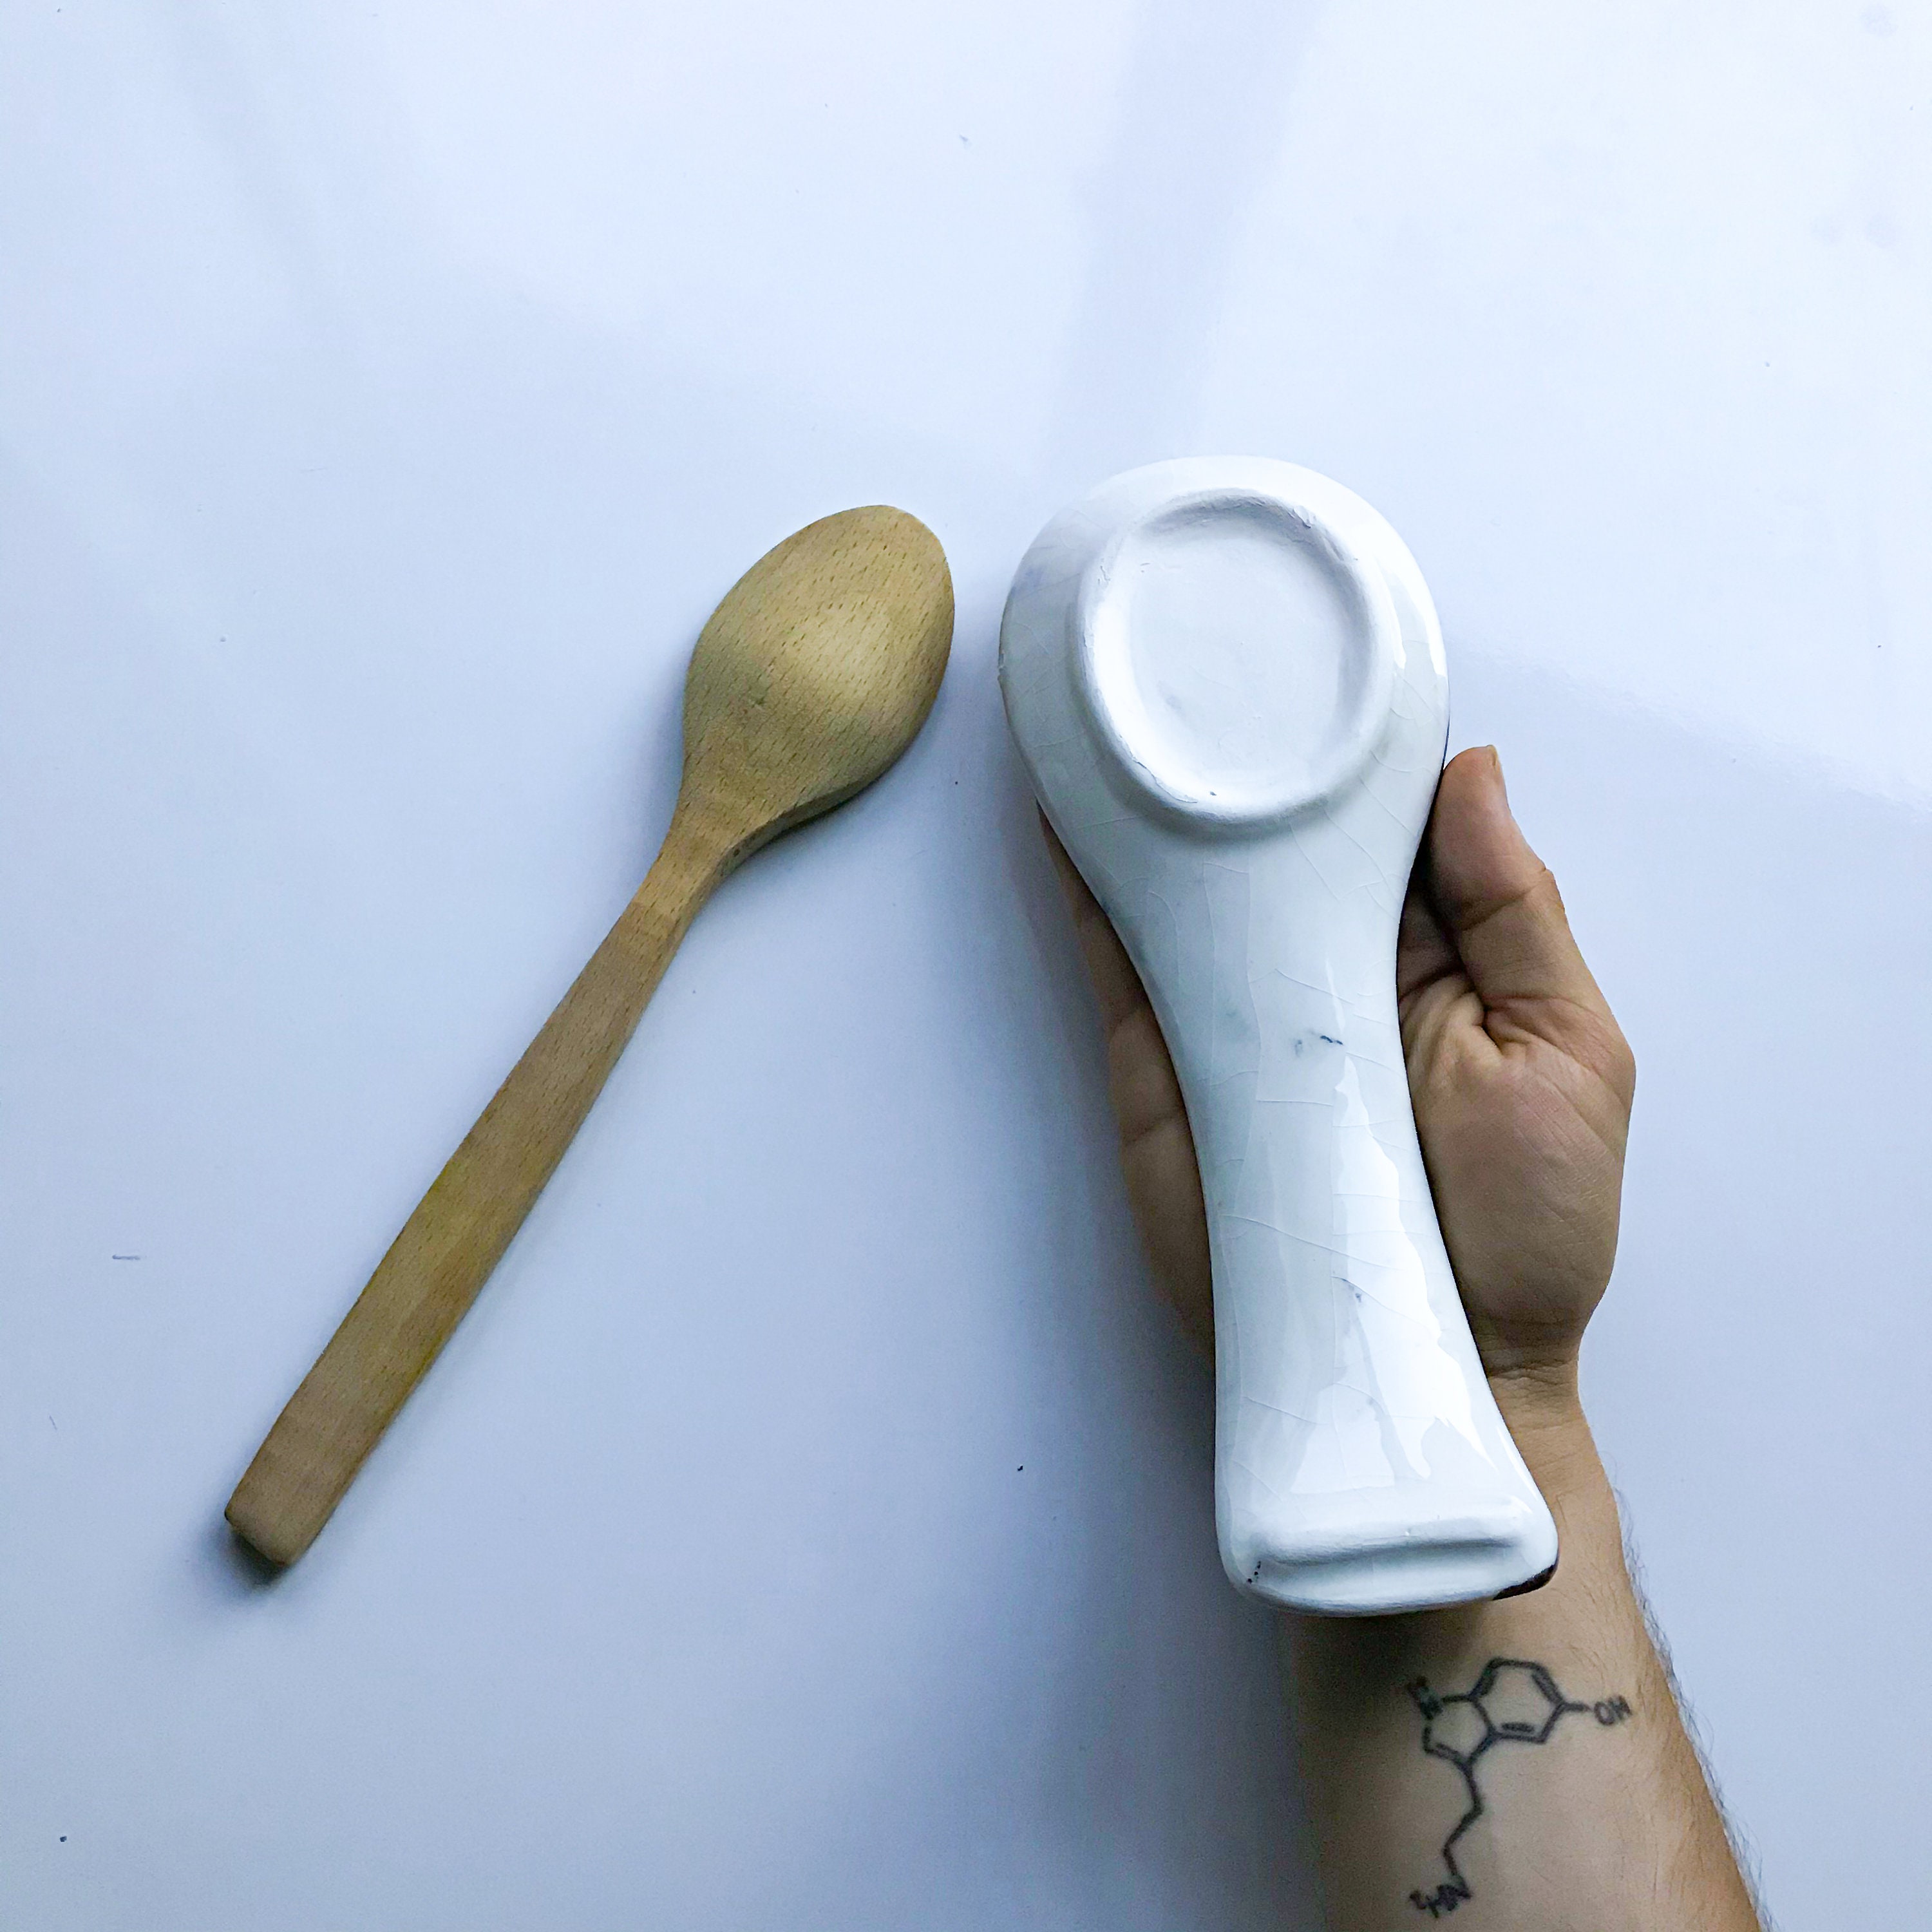 Bel-Art Sampler Spoon, 1/2 Teaspoon, pack/12